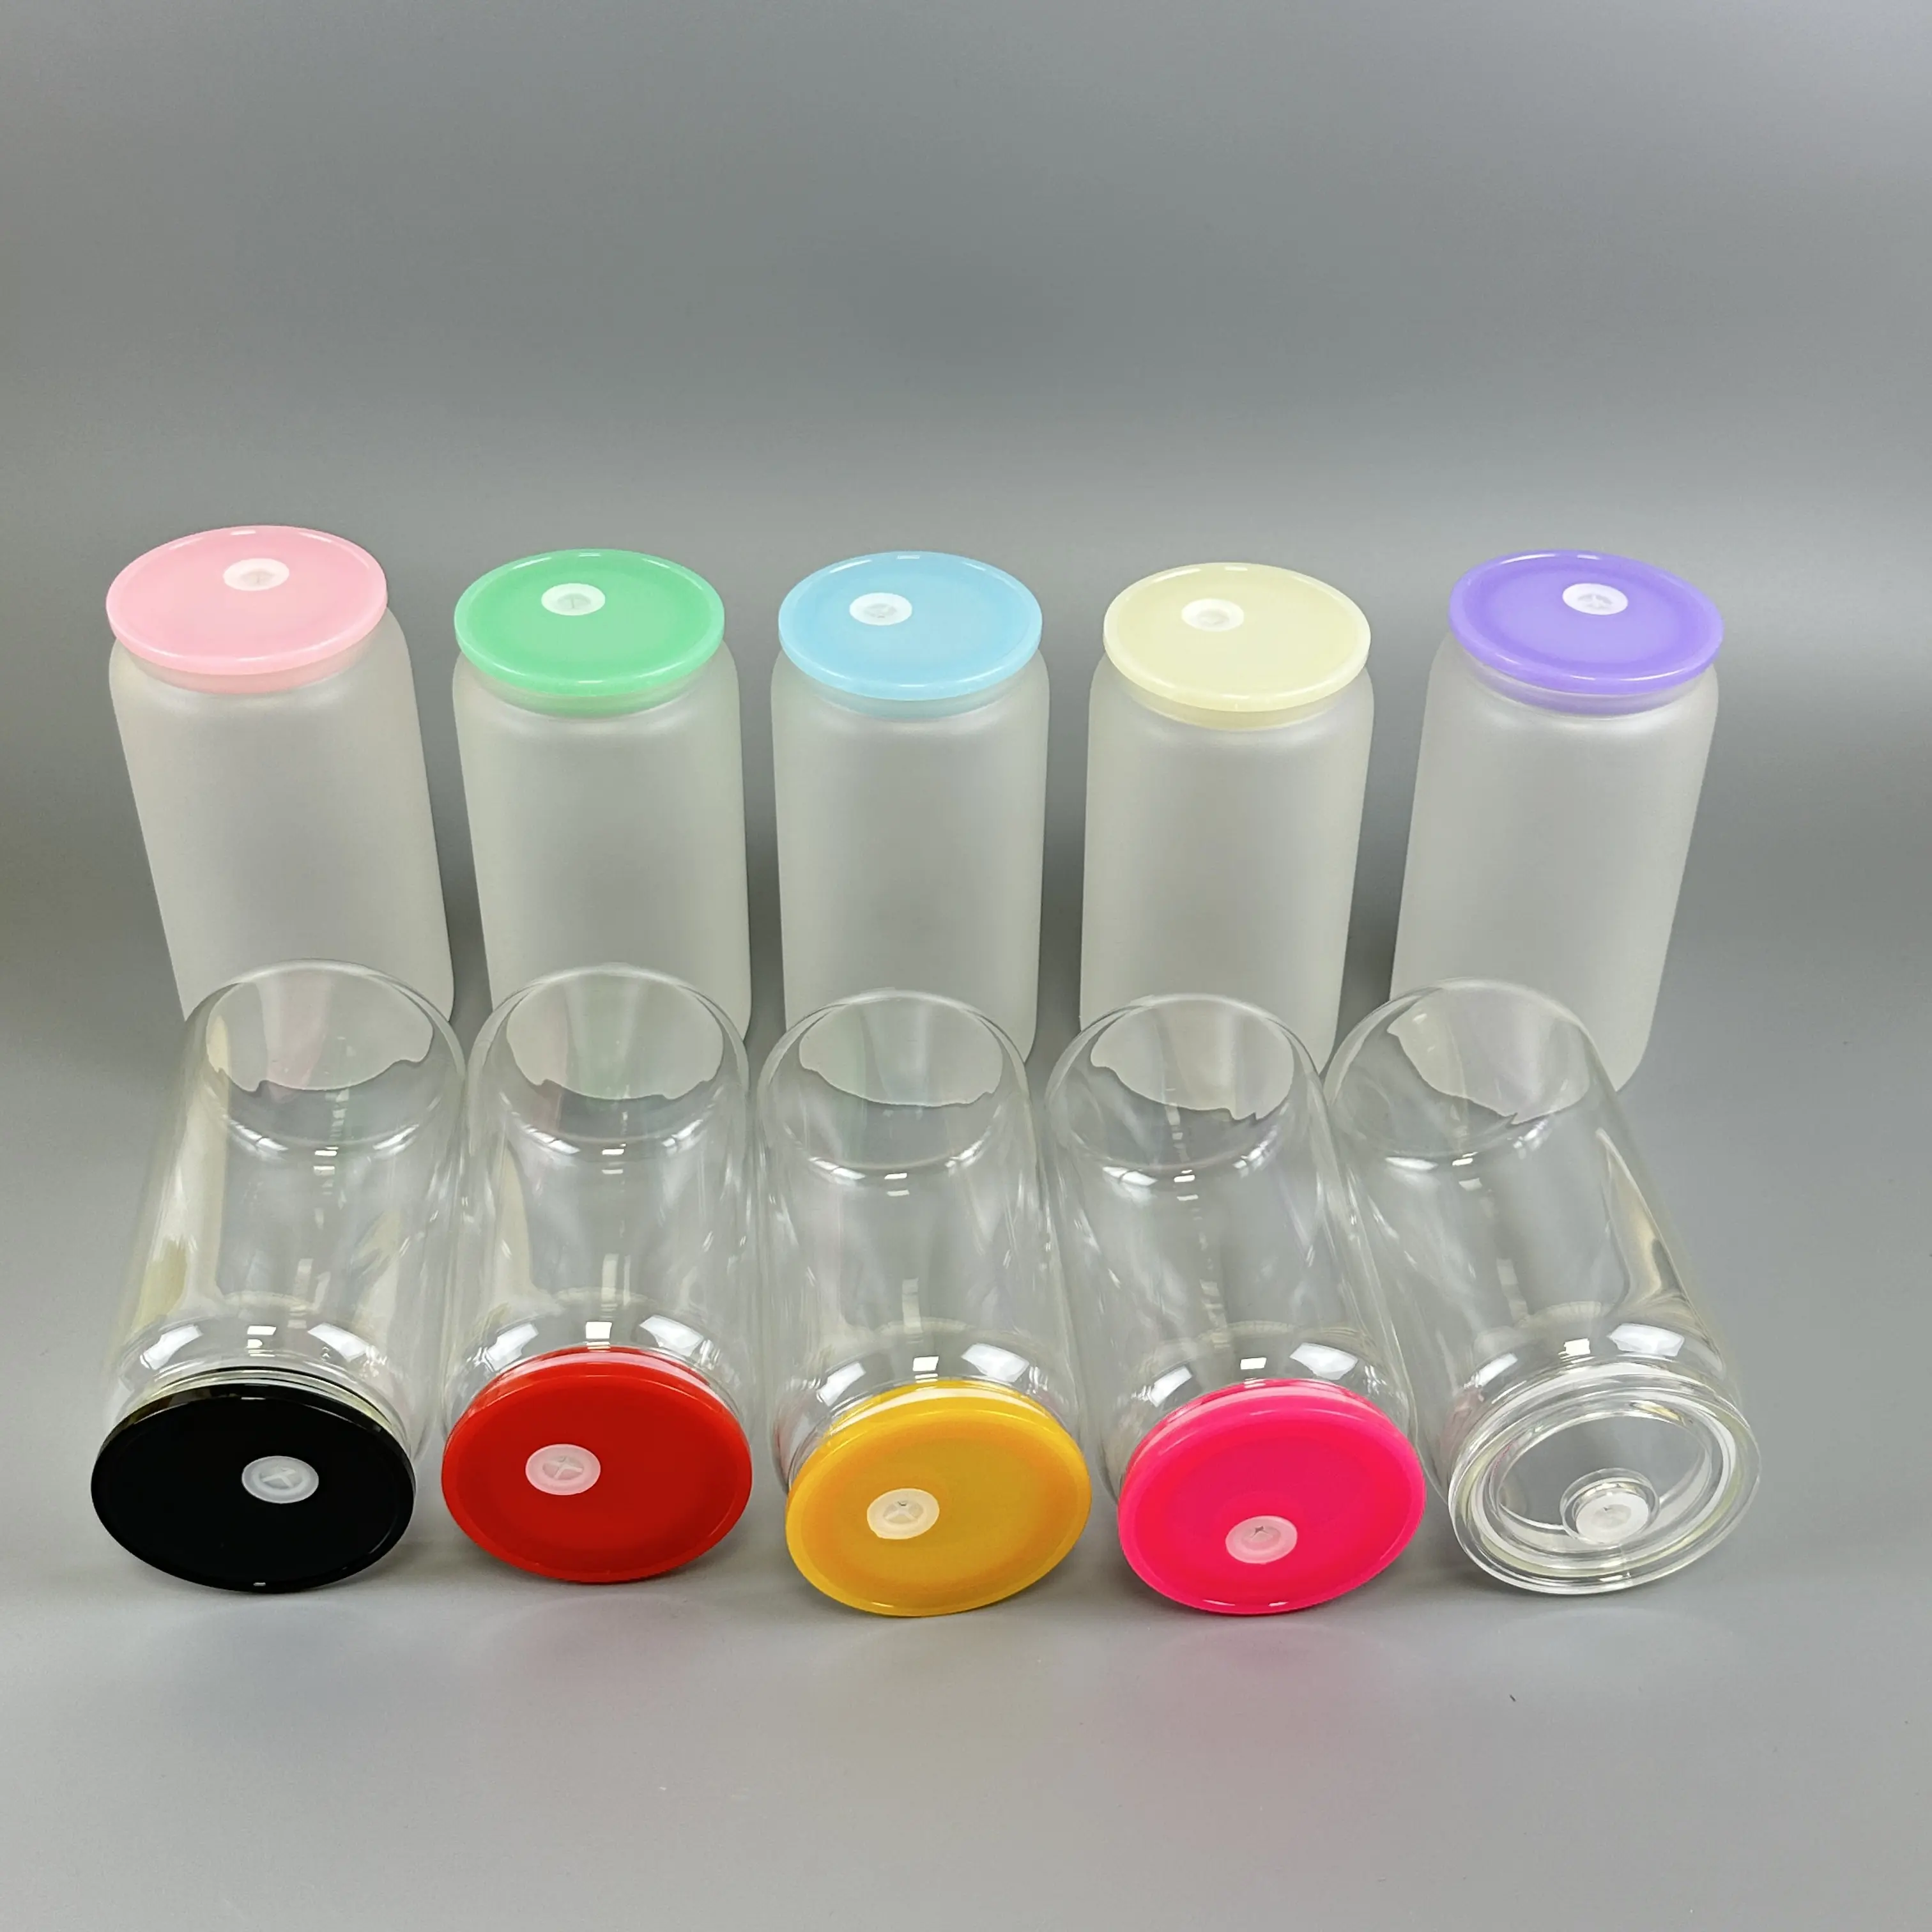 미국 창고 도매 BPA 무료 다채로운 아크릴 뚜껑 유리 캔 컬러 교체 PP 플라스틱 뚜껑 16 온스 맥주 유리 캔